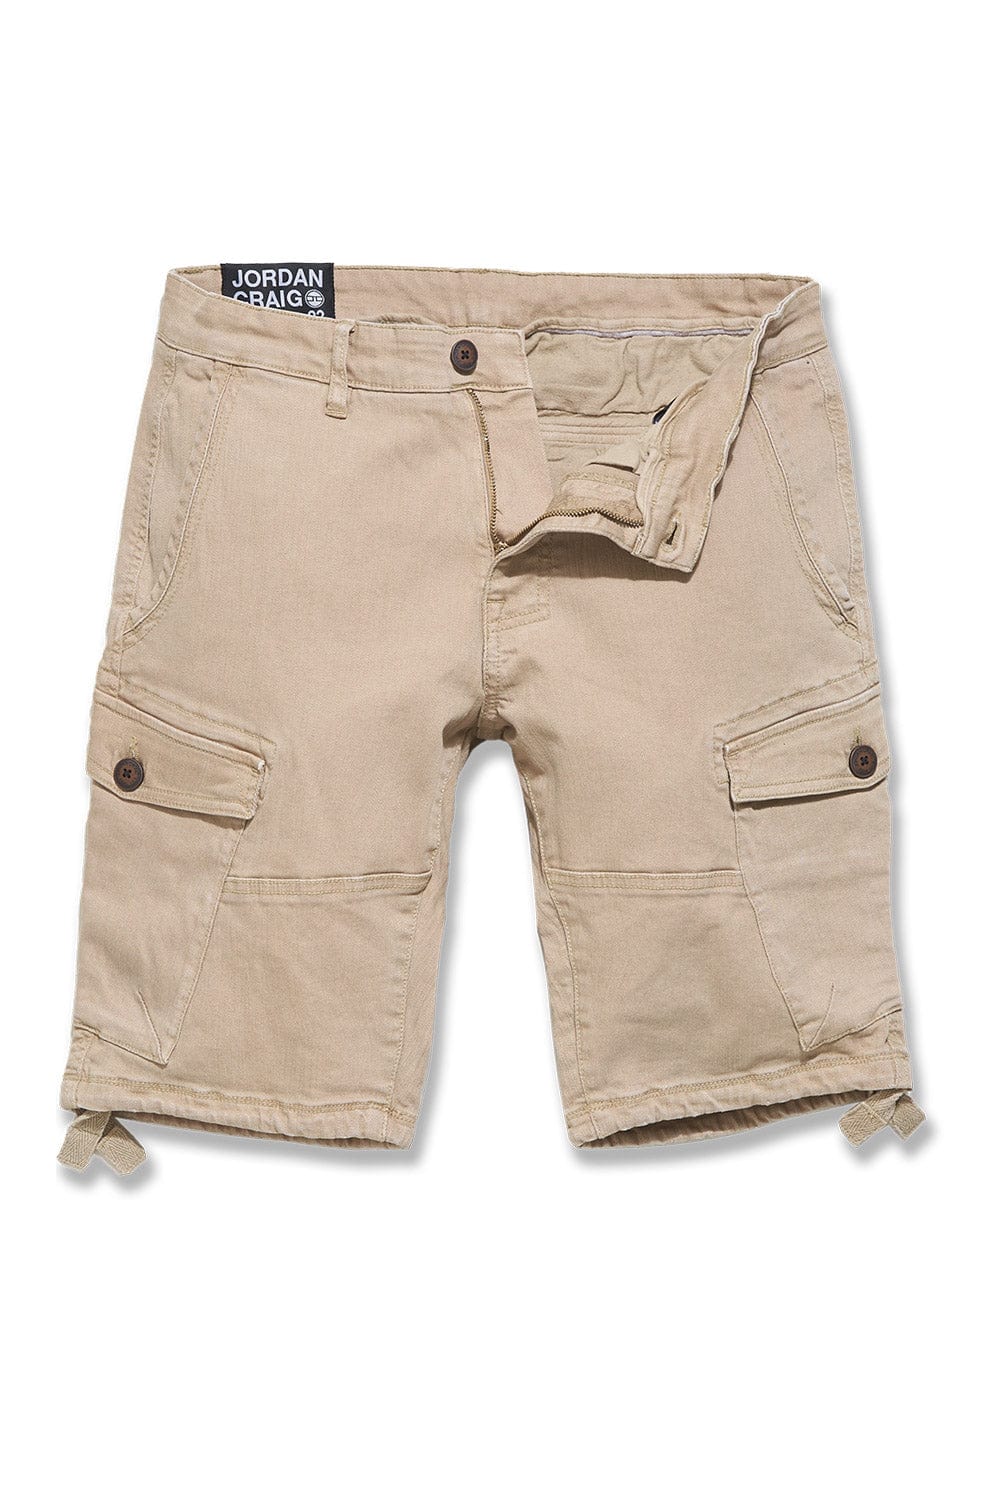 Jordan Craig OG - Cargo Shorts (Khaki) 30 / Khaki